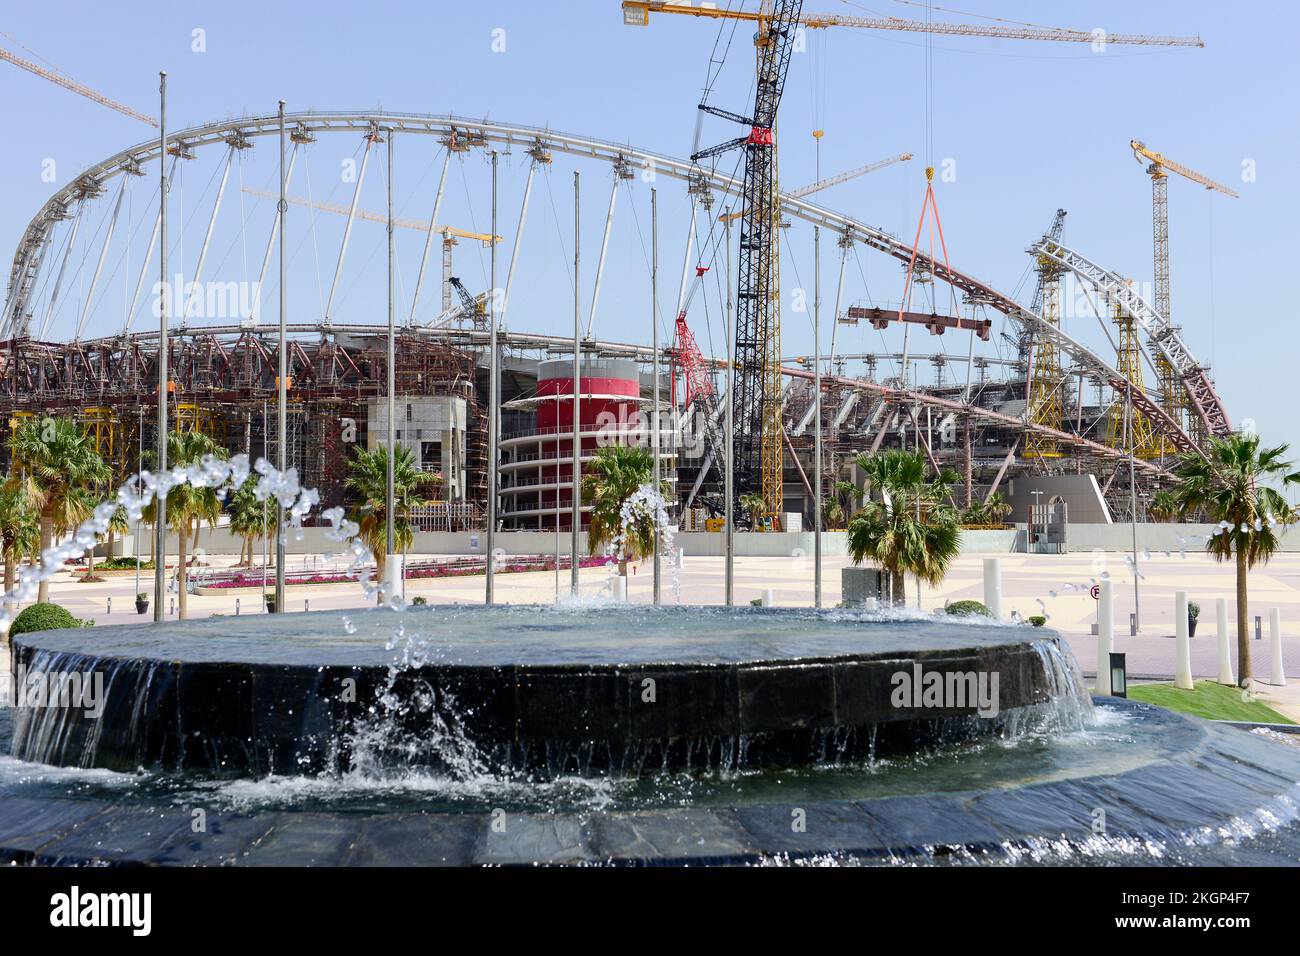 QATAR, Doha, sitio de construcción Estadio Internacional de Khalifa para la Copa Mundial de la FIFA 2022, construido por el contratista midmac y sixt contrato, el trabajo es realizado por los trabajadores migrantes / KATAR, Doha, Bastelle Khalifa Estadio Internacional fuer die FIFA Fussballweltmeisterschaft 2022, auf den Baustellen arbeiten Gastarbeiter aus verschiedenen Ländern Foto de stock